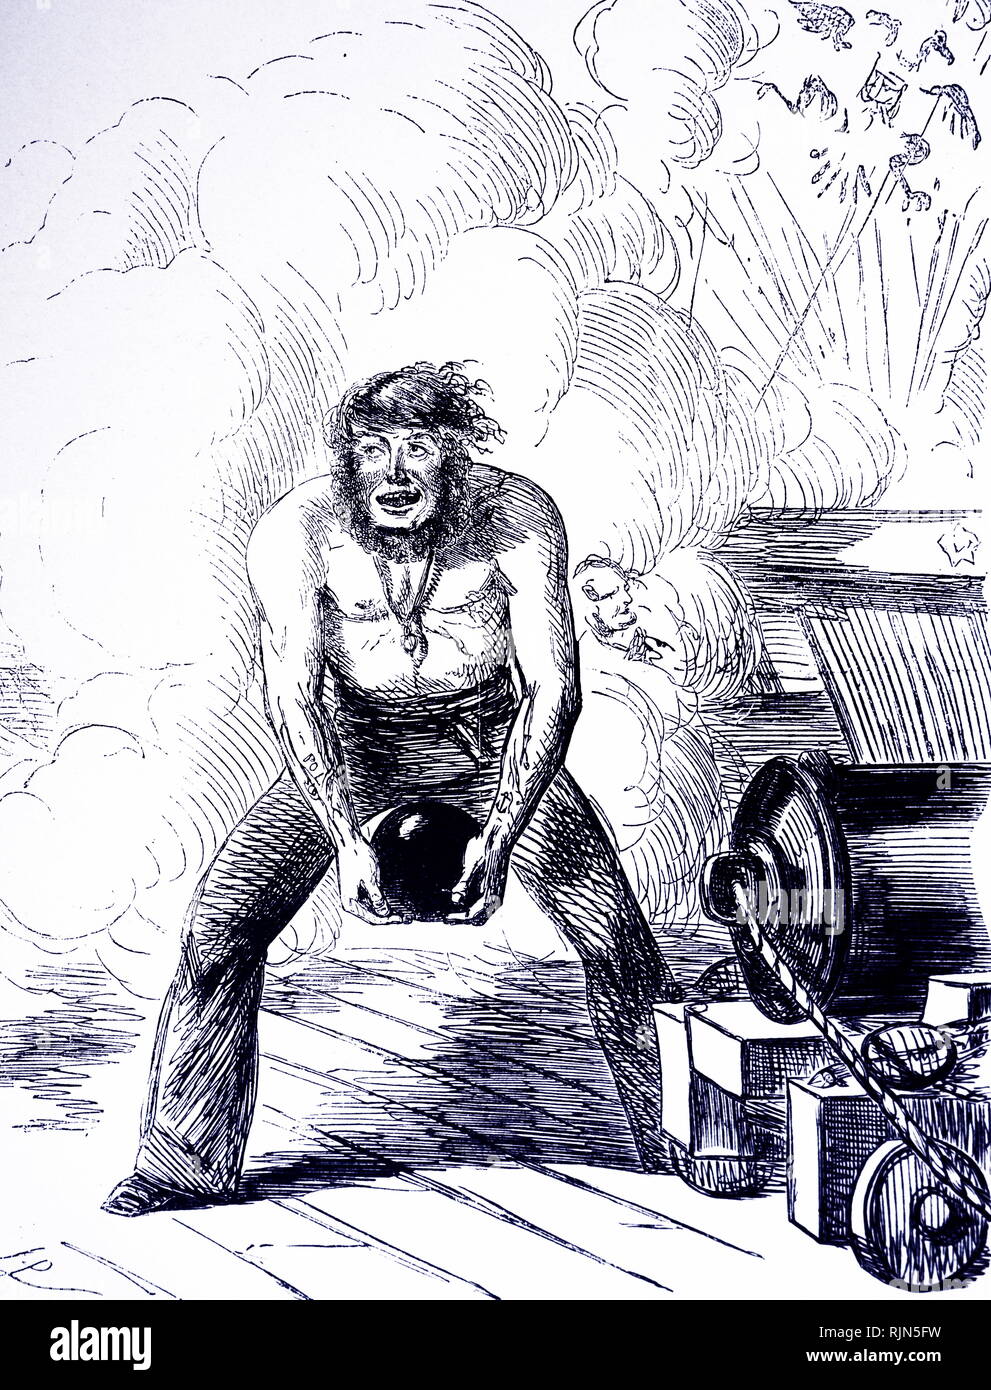 Guerre de Crimée caricature de John Leech, Punch, 1854, montrant un matelot qualifié dans la flotte de la Baltique britanniques désireux d'envoyer une série de tiré sur les Russes. À droite de l'image l'aigle à deux têtes, l'emblème de la Russie, est réduits en morceaux Banque D'Images